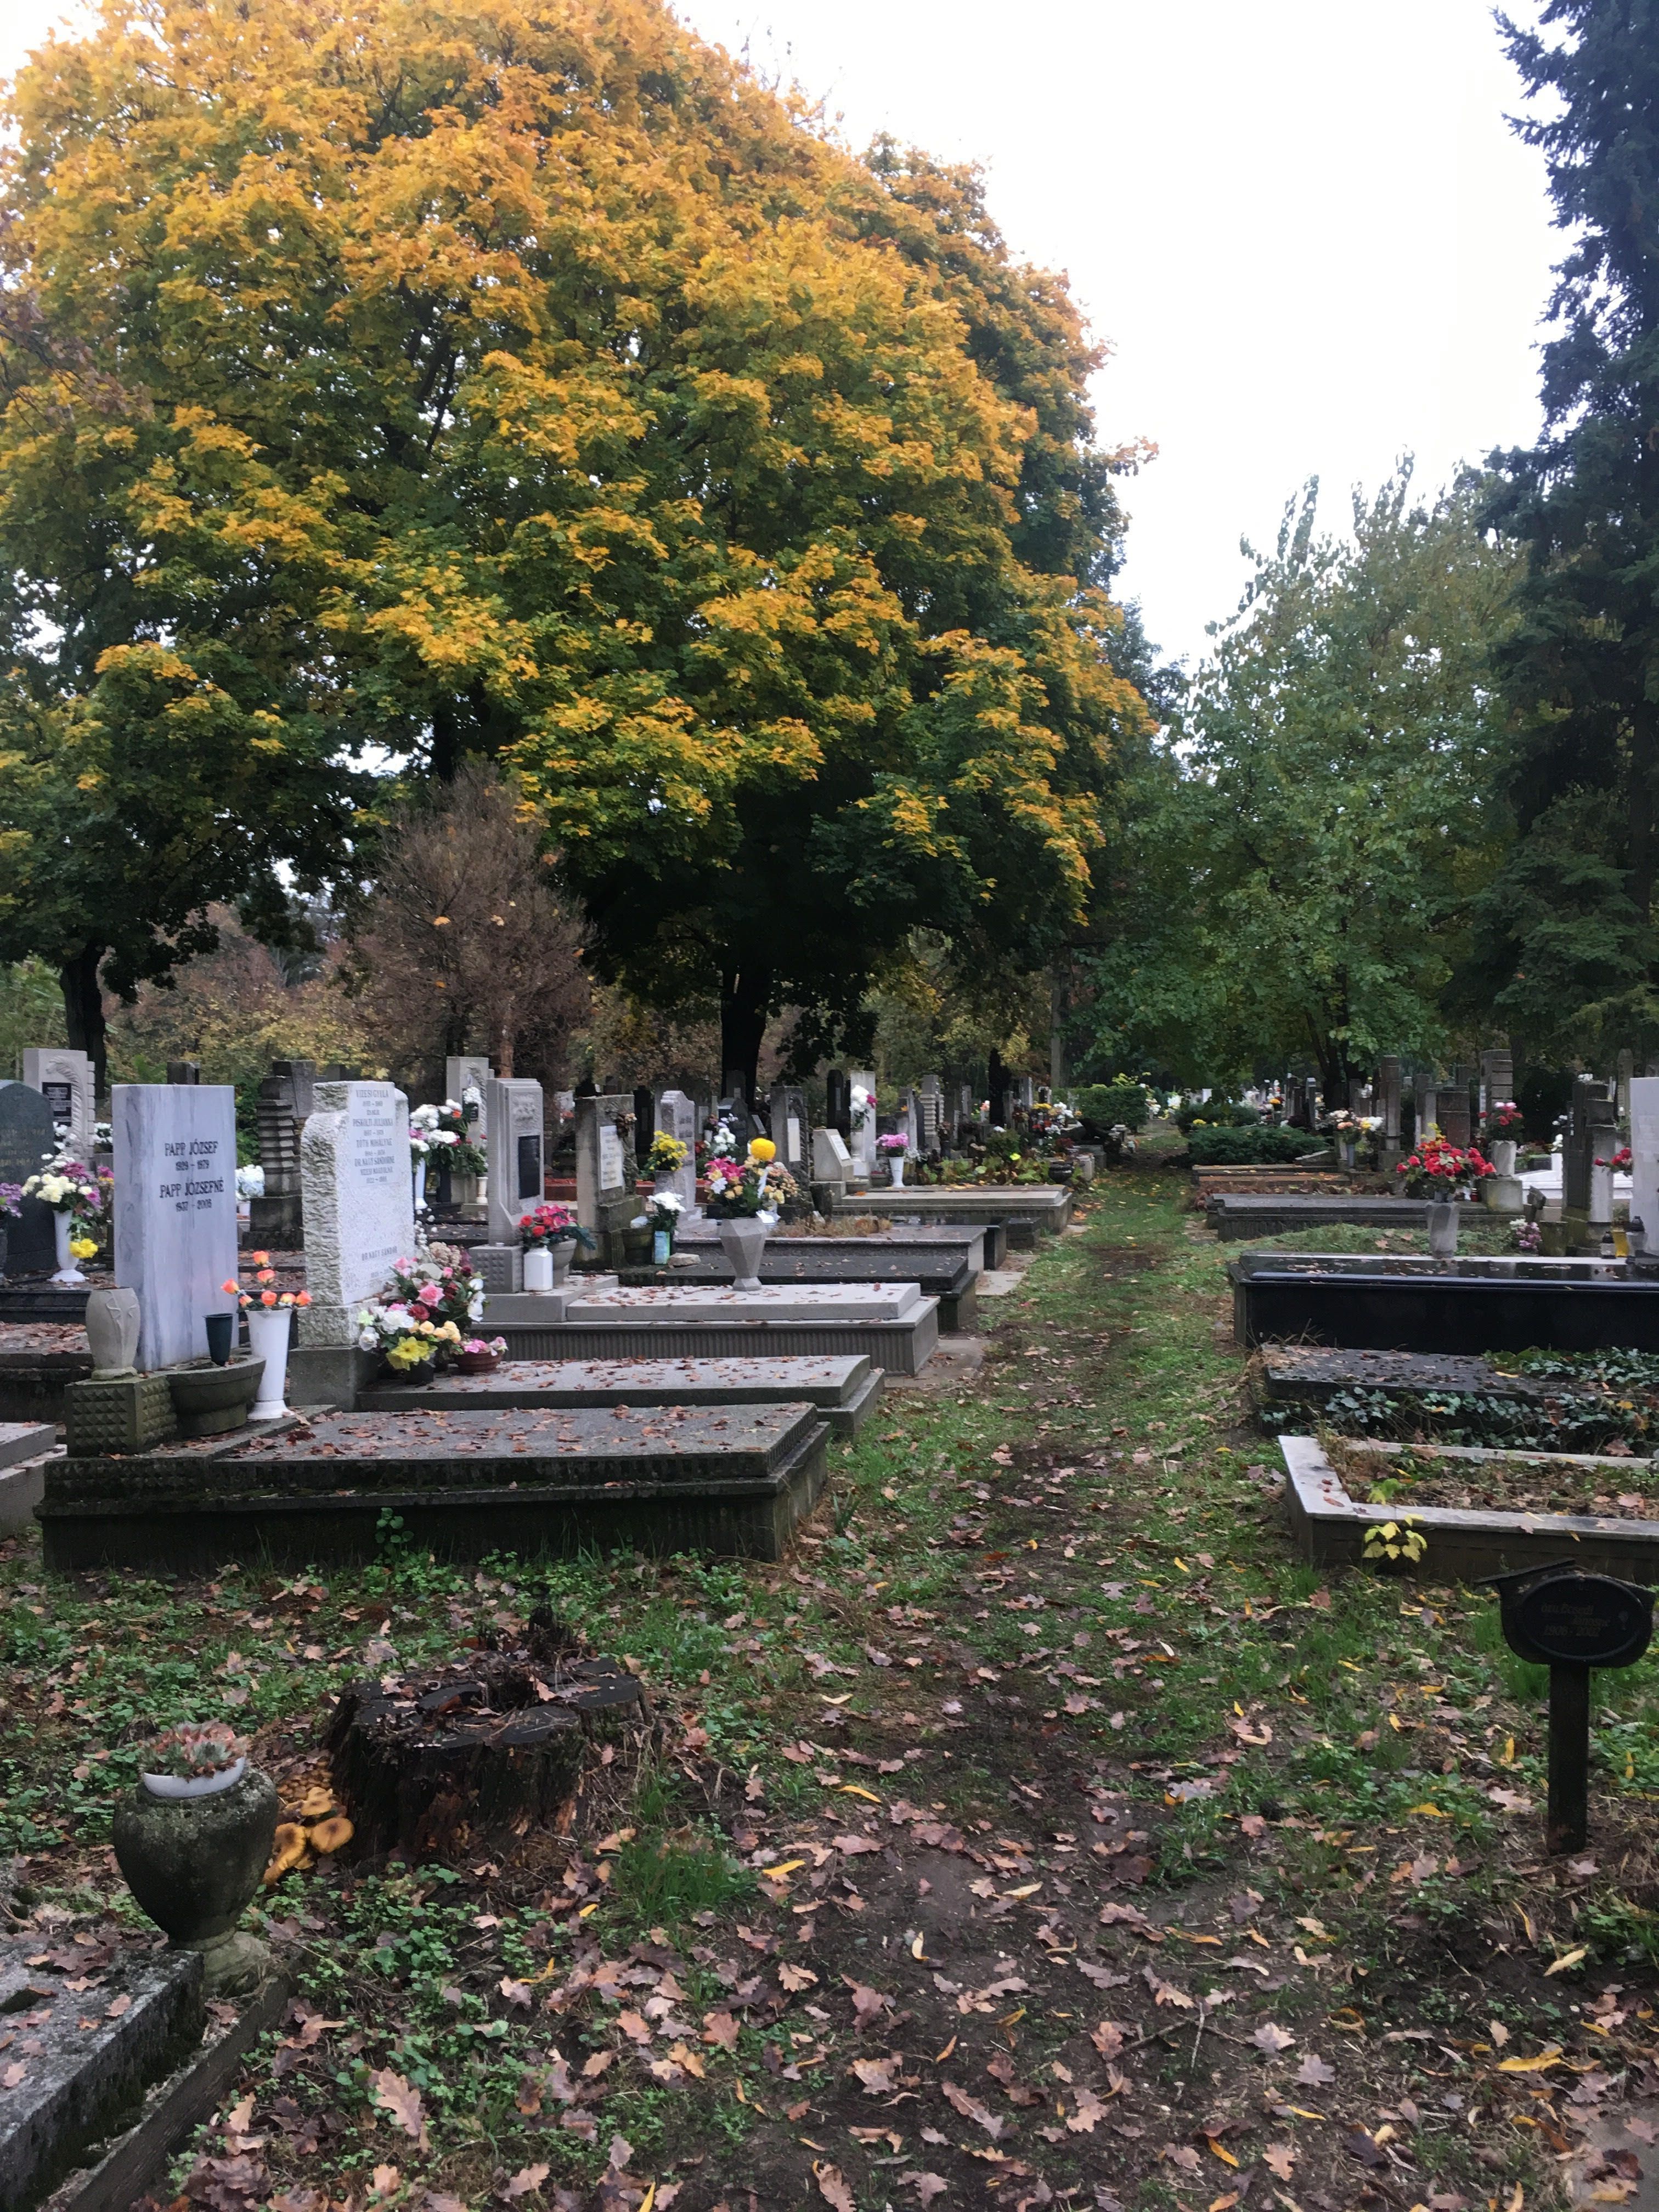 Meghalt a nő, aki kriptába zuhant a gödöllői temetőben